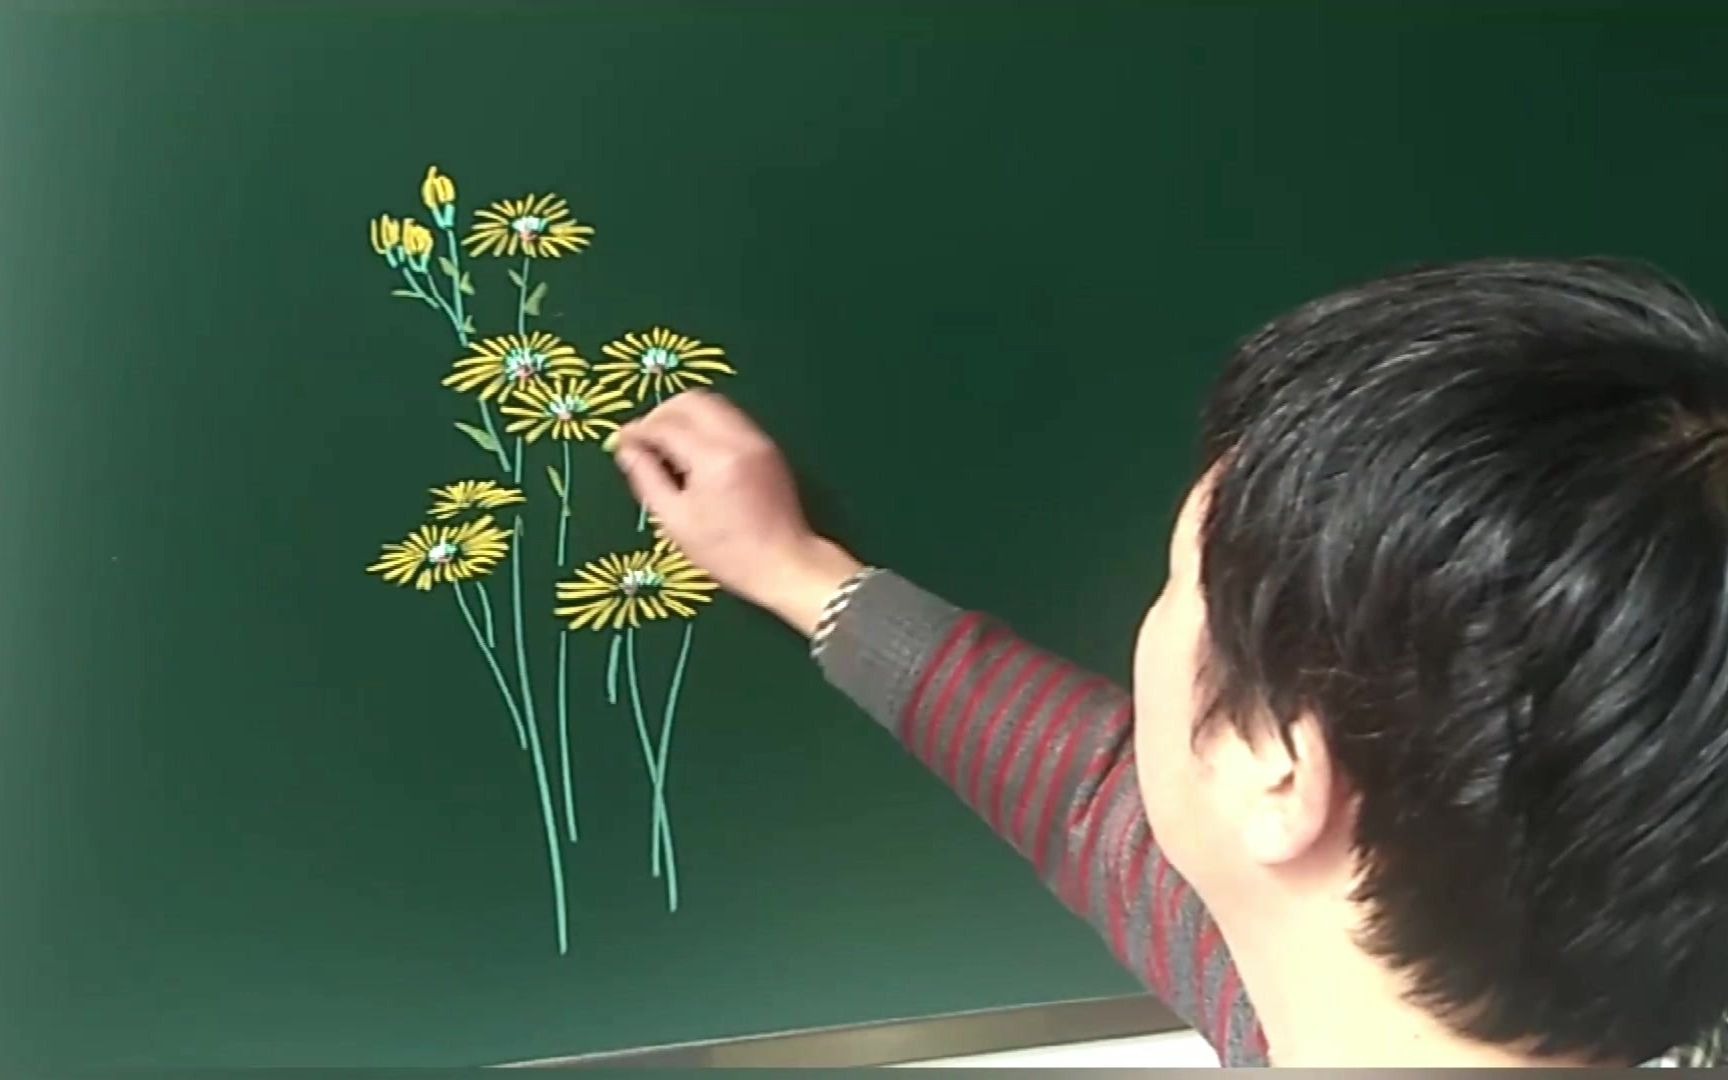 Vẽ hoa cúc bằng phấn không chỉ dễ dàng mà còn đem lại hiệu quả đáng kinh ngạc. Hãy thử sức với loại phấn vẽ chuyên dụng và các bài hướng dẫn vẽ đơn giản, bạn sẽ có một bức tranh vô cùng đẹp và cuốn hút mọi ánh nhìn.